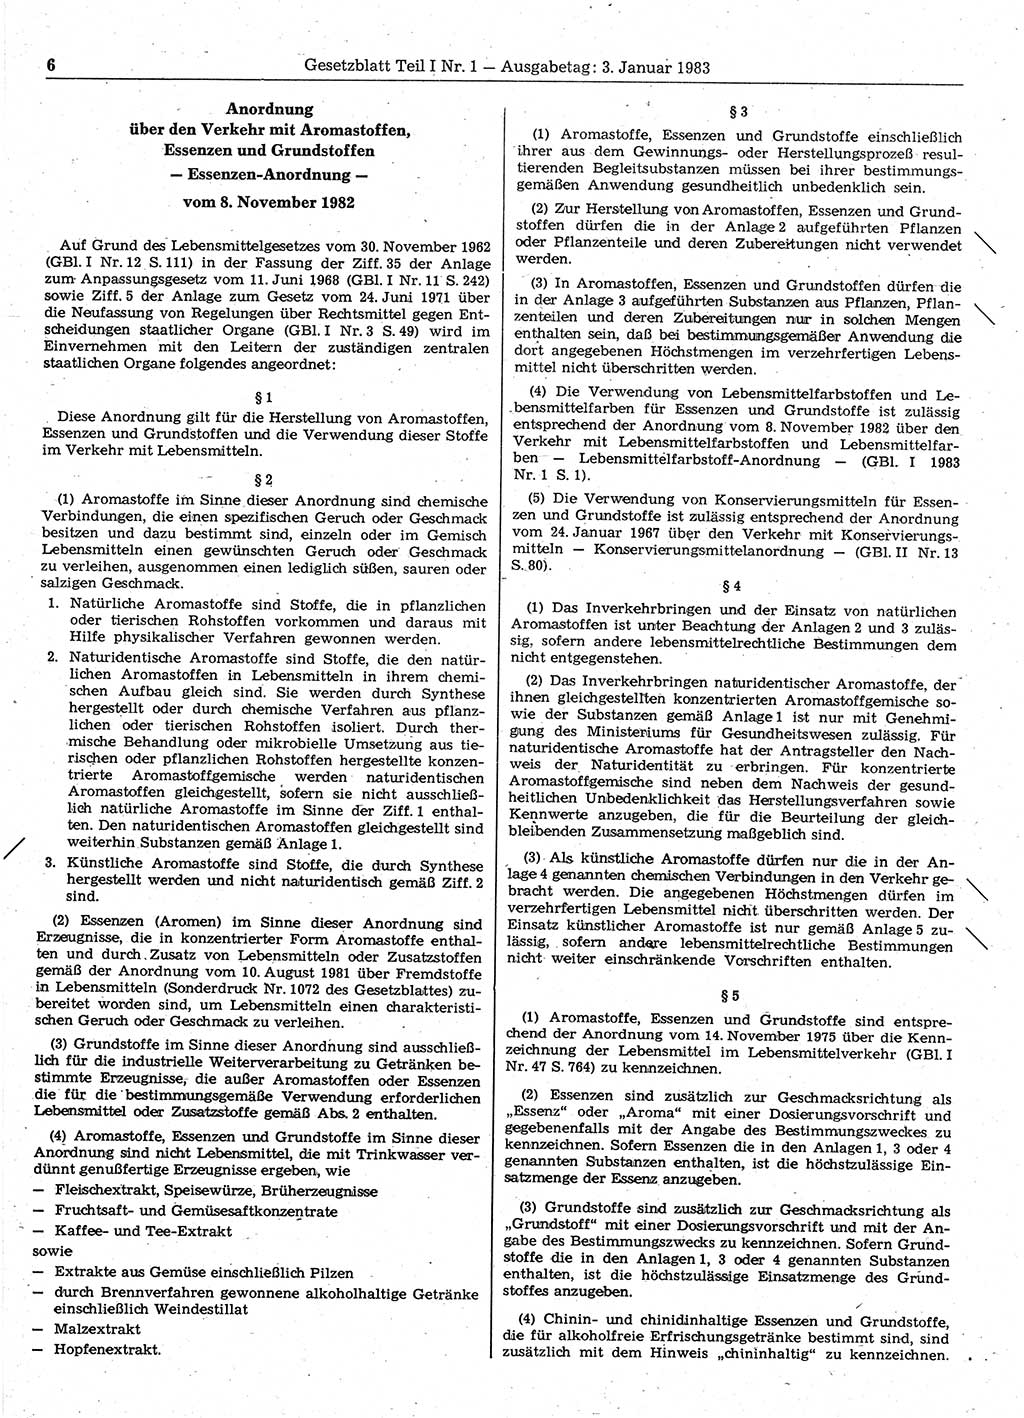 Gesetzblatt (GBl.) der Deutschen Demokratischen Republik (DDR) Teil Ⅰ 1983, Seite 6 (GBl. DDR Ⅰ 1983, S. 6)